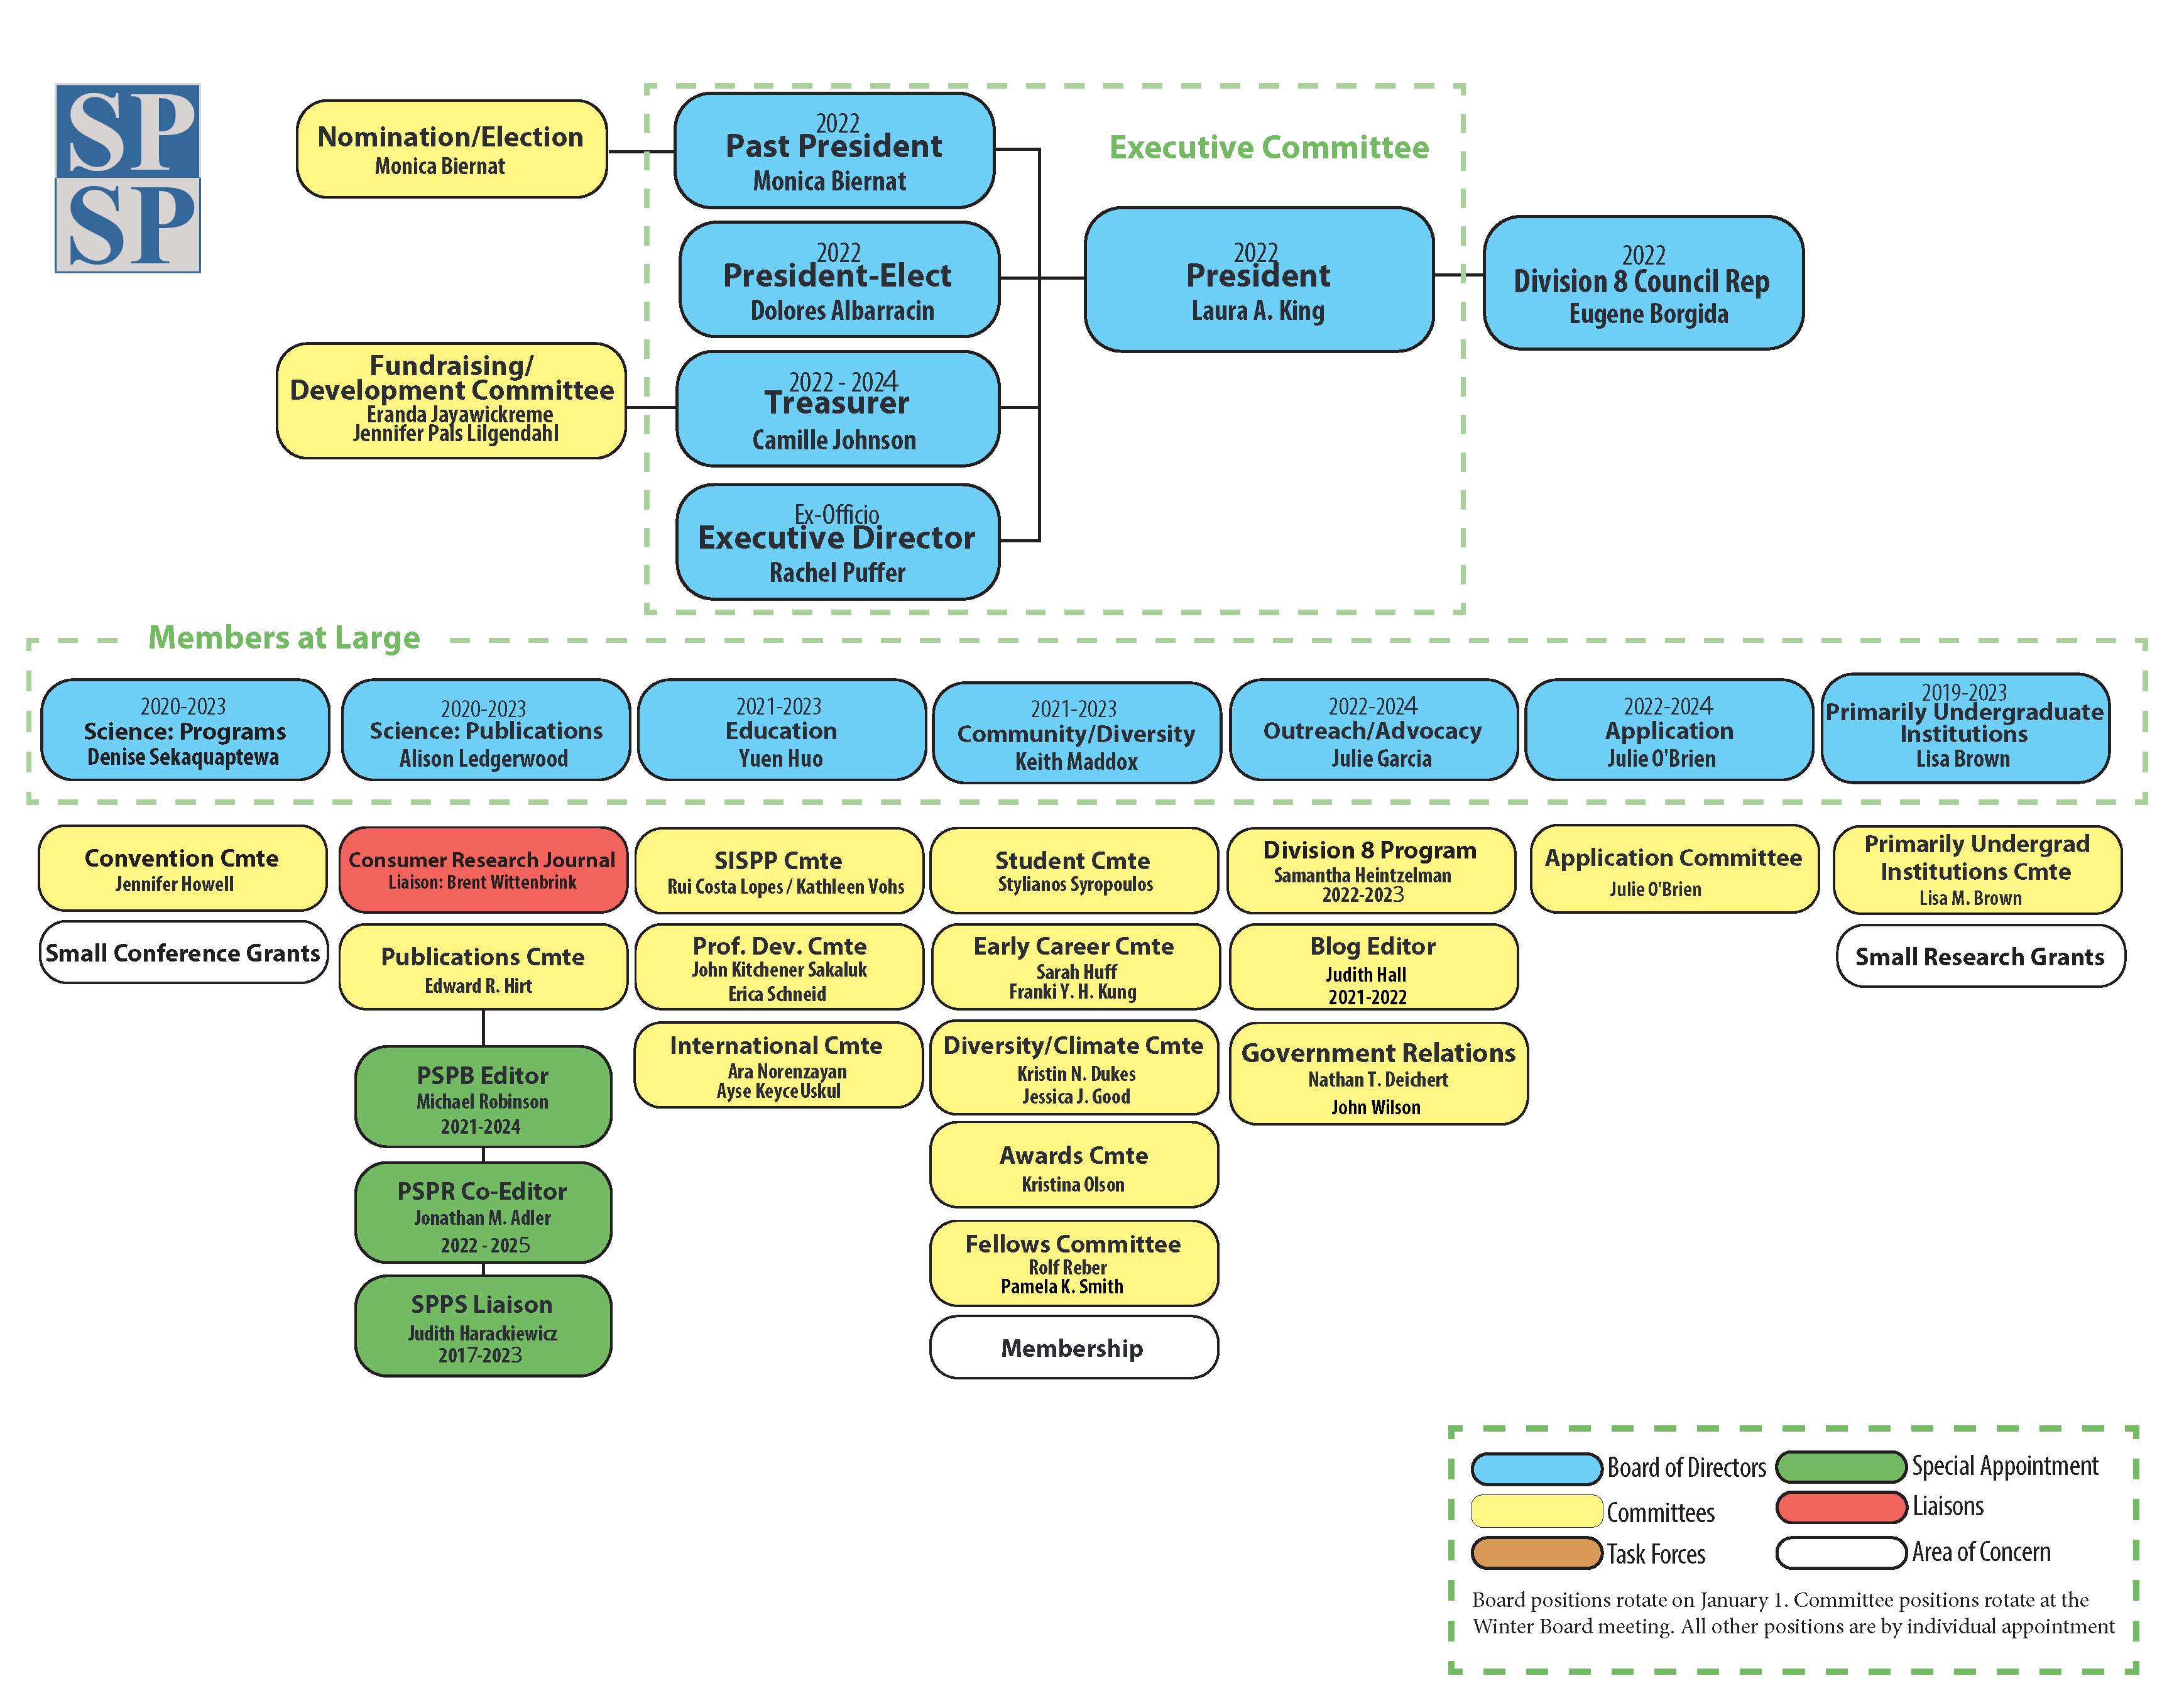 2022 Organizational Chart